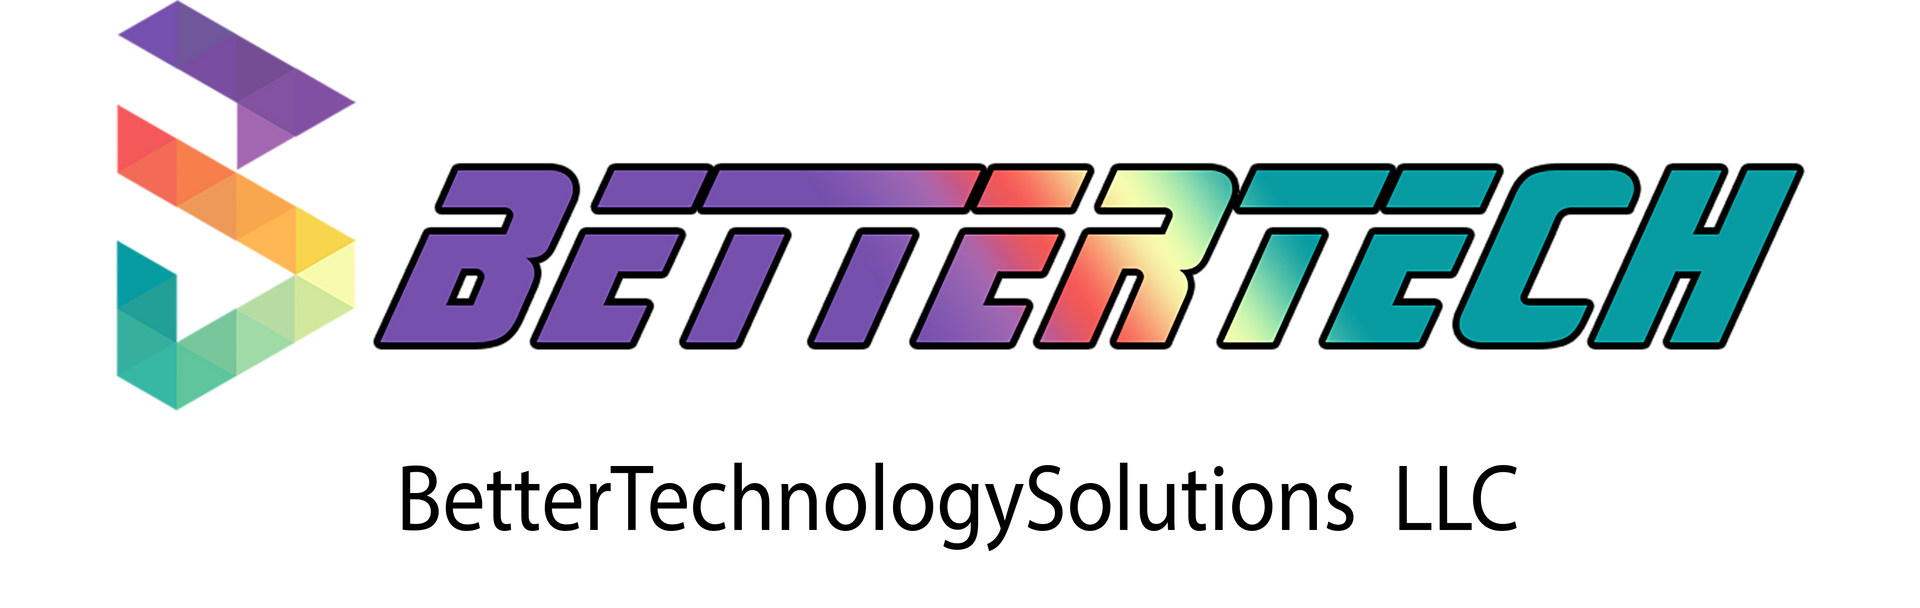 bettertech logo